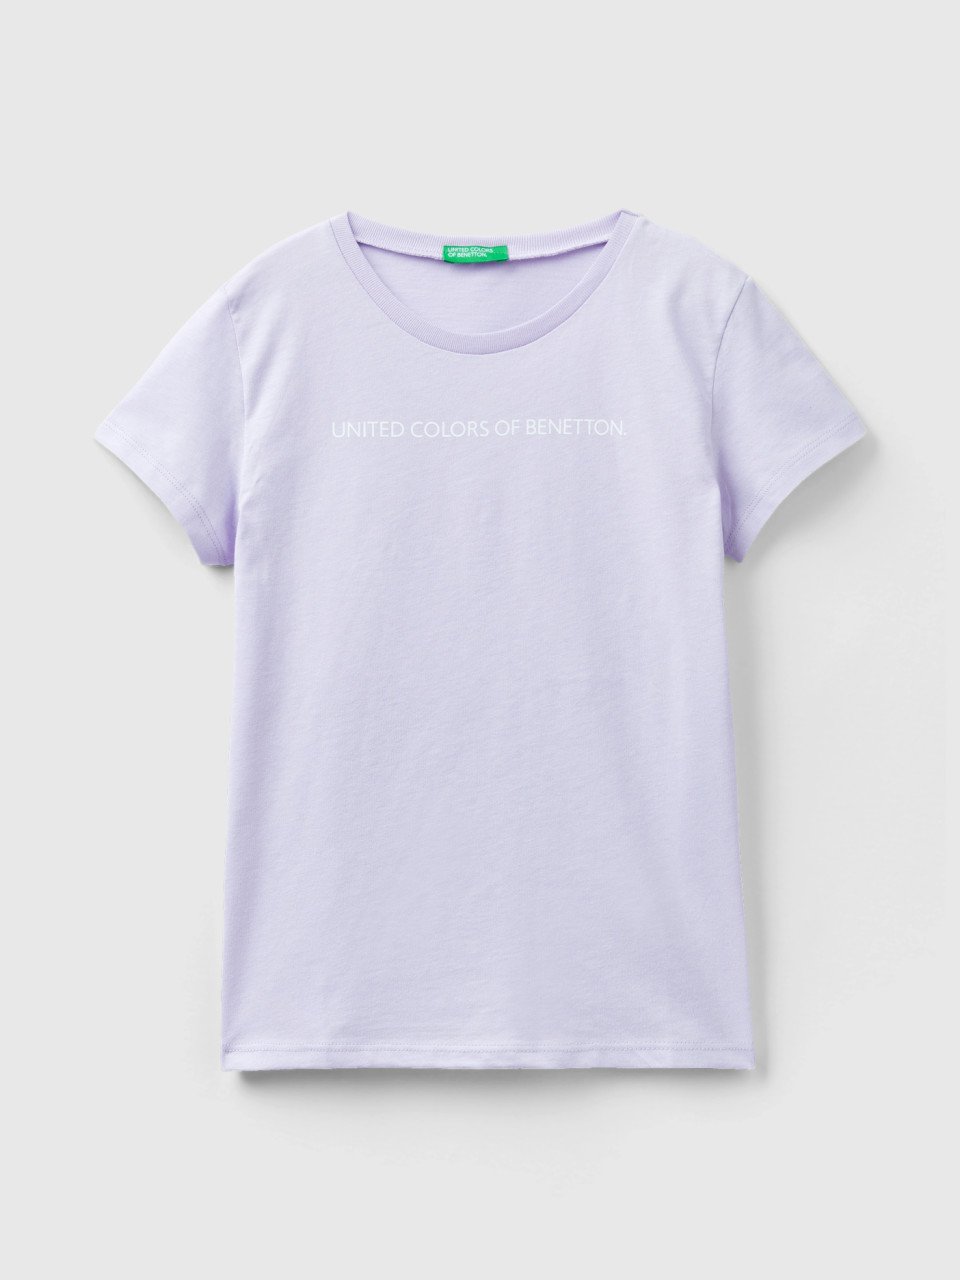 Benetton, Camiseta De 100 % Algodón Con Logotipo, Lila, Niños